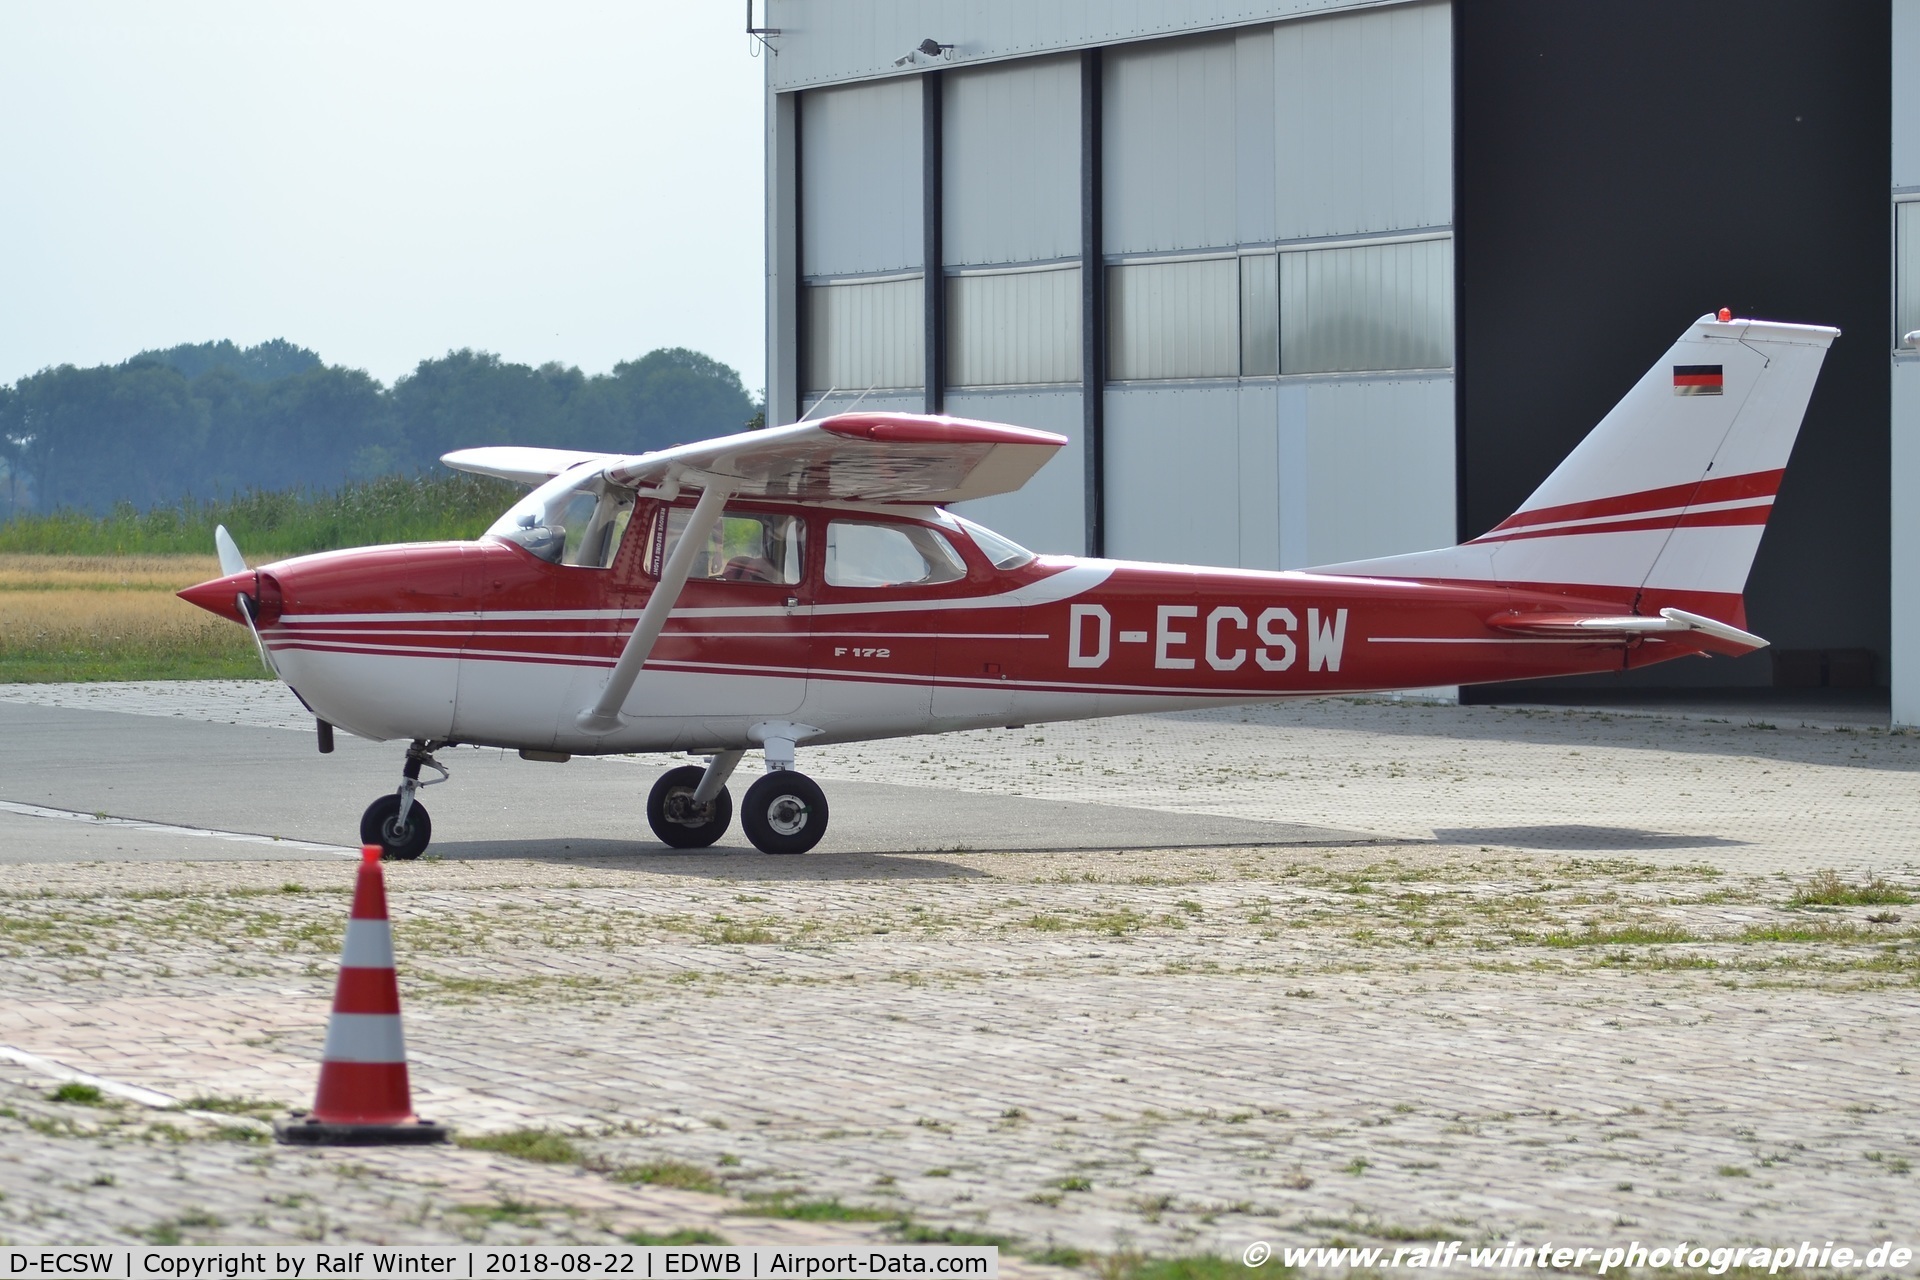 D-ECSW, Reims F172L Skyhawk C/N 0846, Reims F172L Skyhawk - Private - 0846 - D-ECSW - 22.08.2108 - EDWB